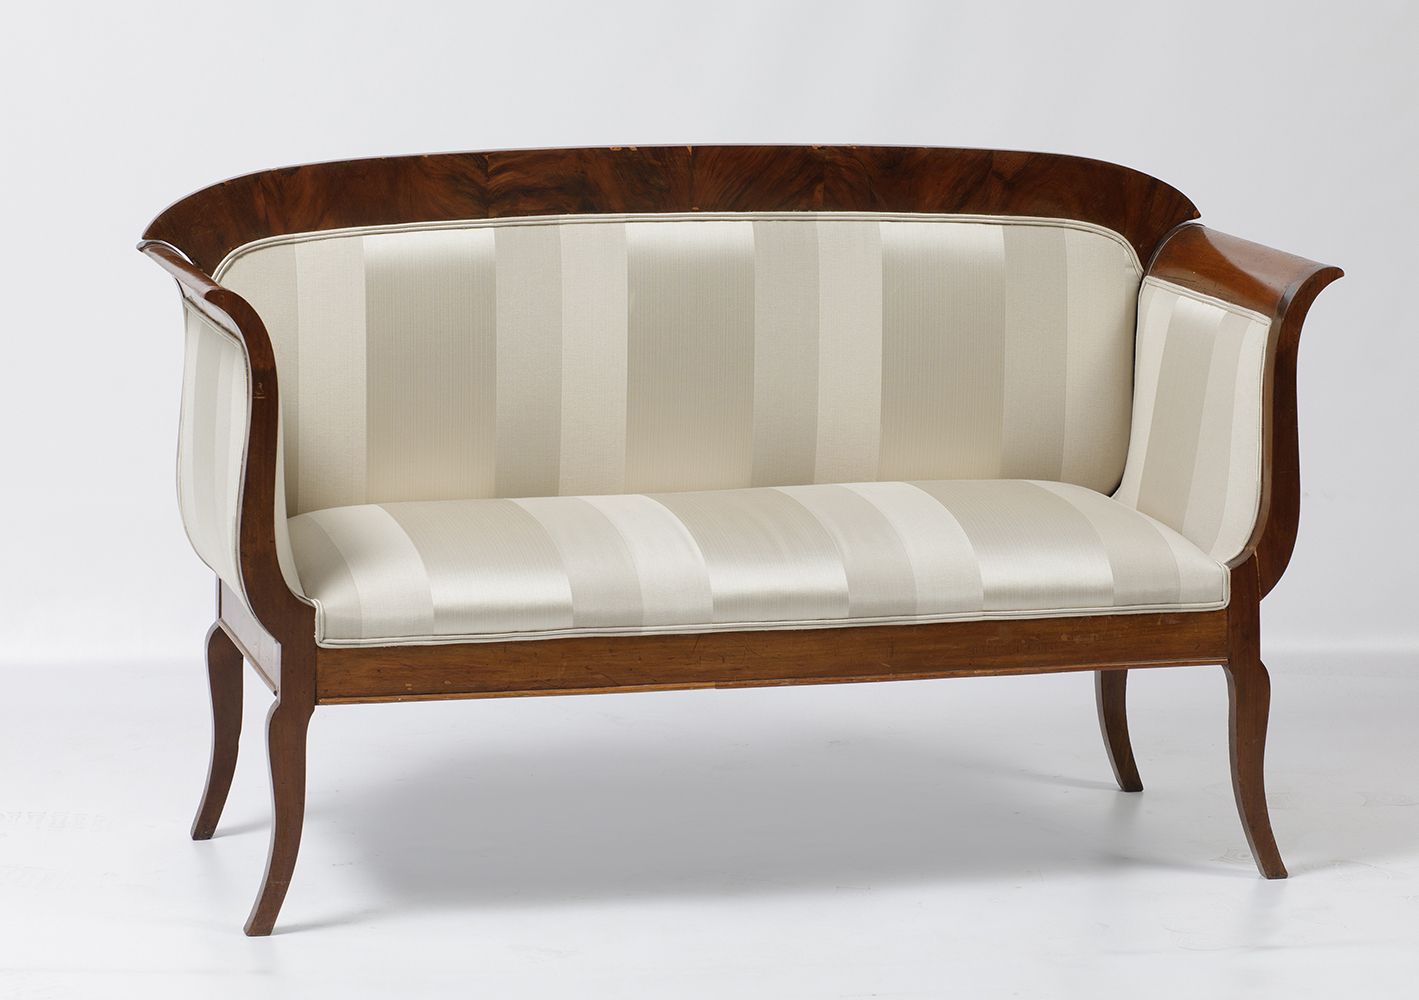 Sofa in mahogany palm Divano inglese S.XIX in legno di mogano. 92 x 15 x 54 cm.